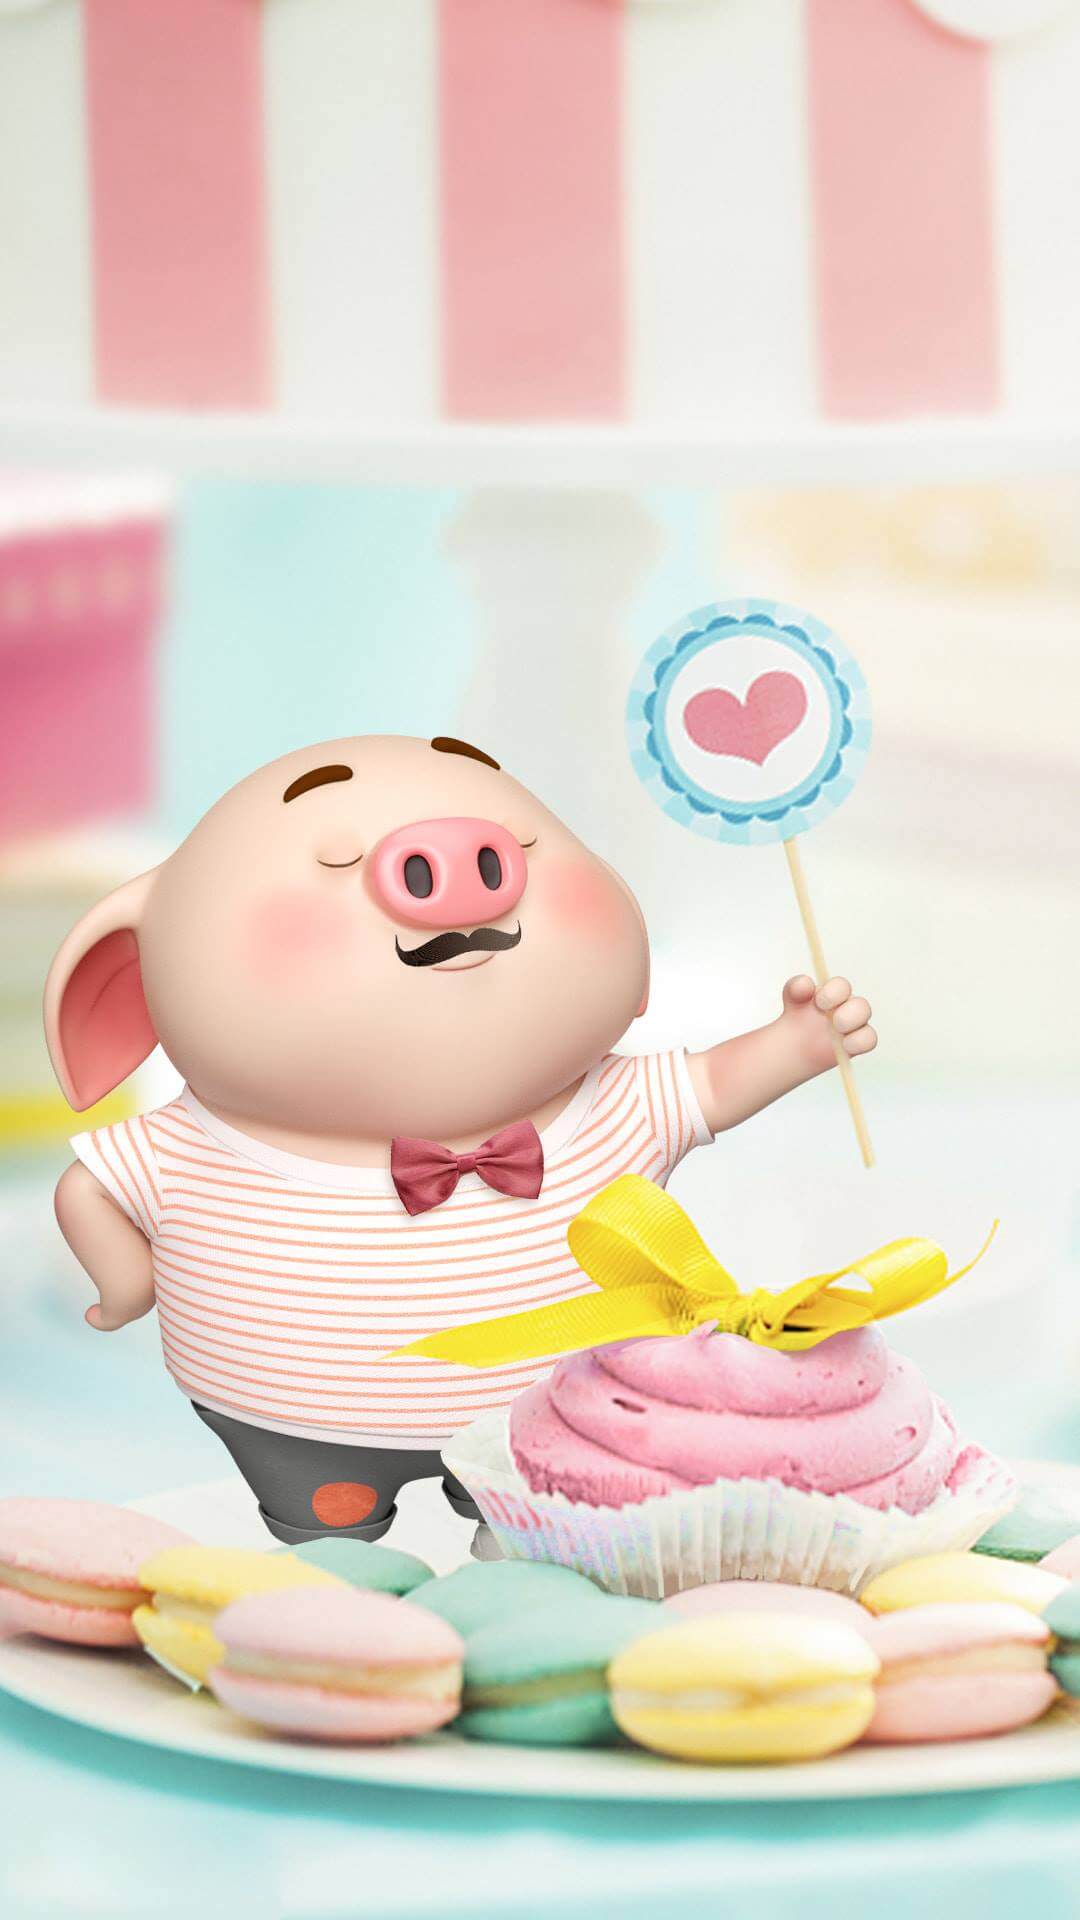 Tải hình nền lợn hồng cho điện thoại Hình nền heo hồng cute hình nền lợn  con Ủn Ỉn siêu dễ thương cho Tết 2019 với hơn 50 mẫu hì  Dễ